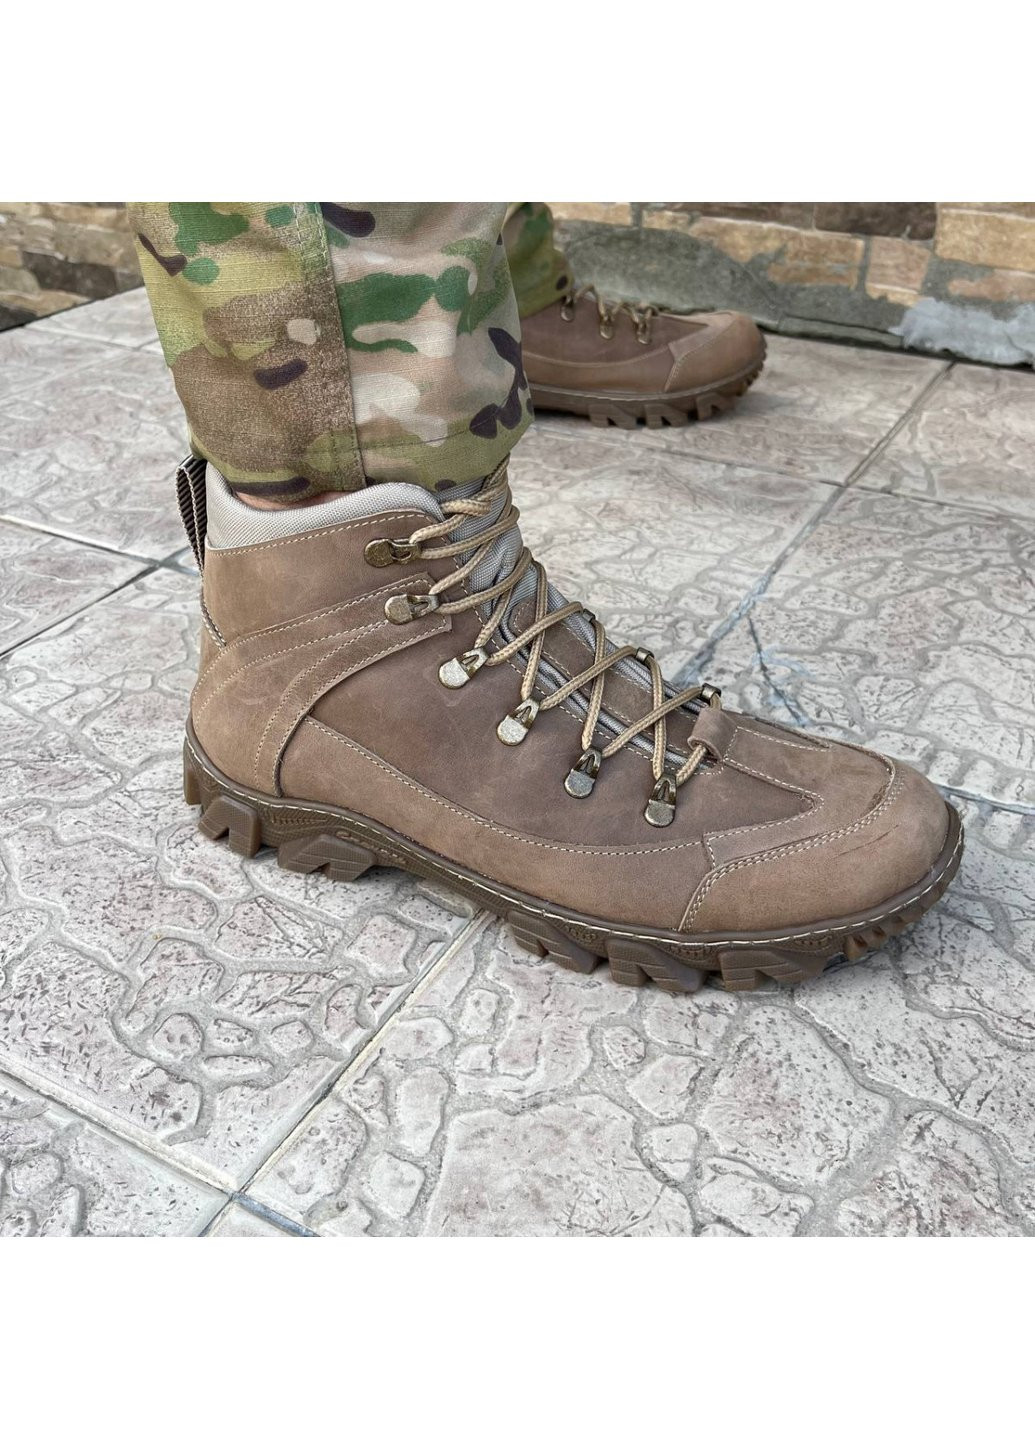 Коричневые осенние ботинки военные тактические всу (зсу) 7520 41 р 27 см коричневые Power